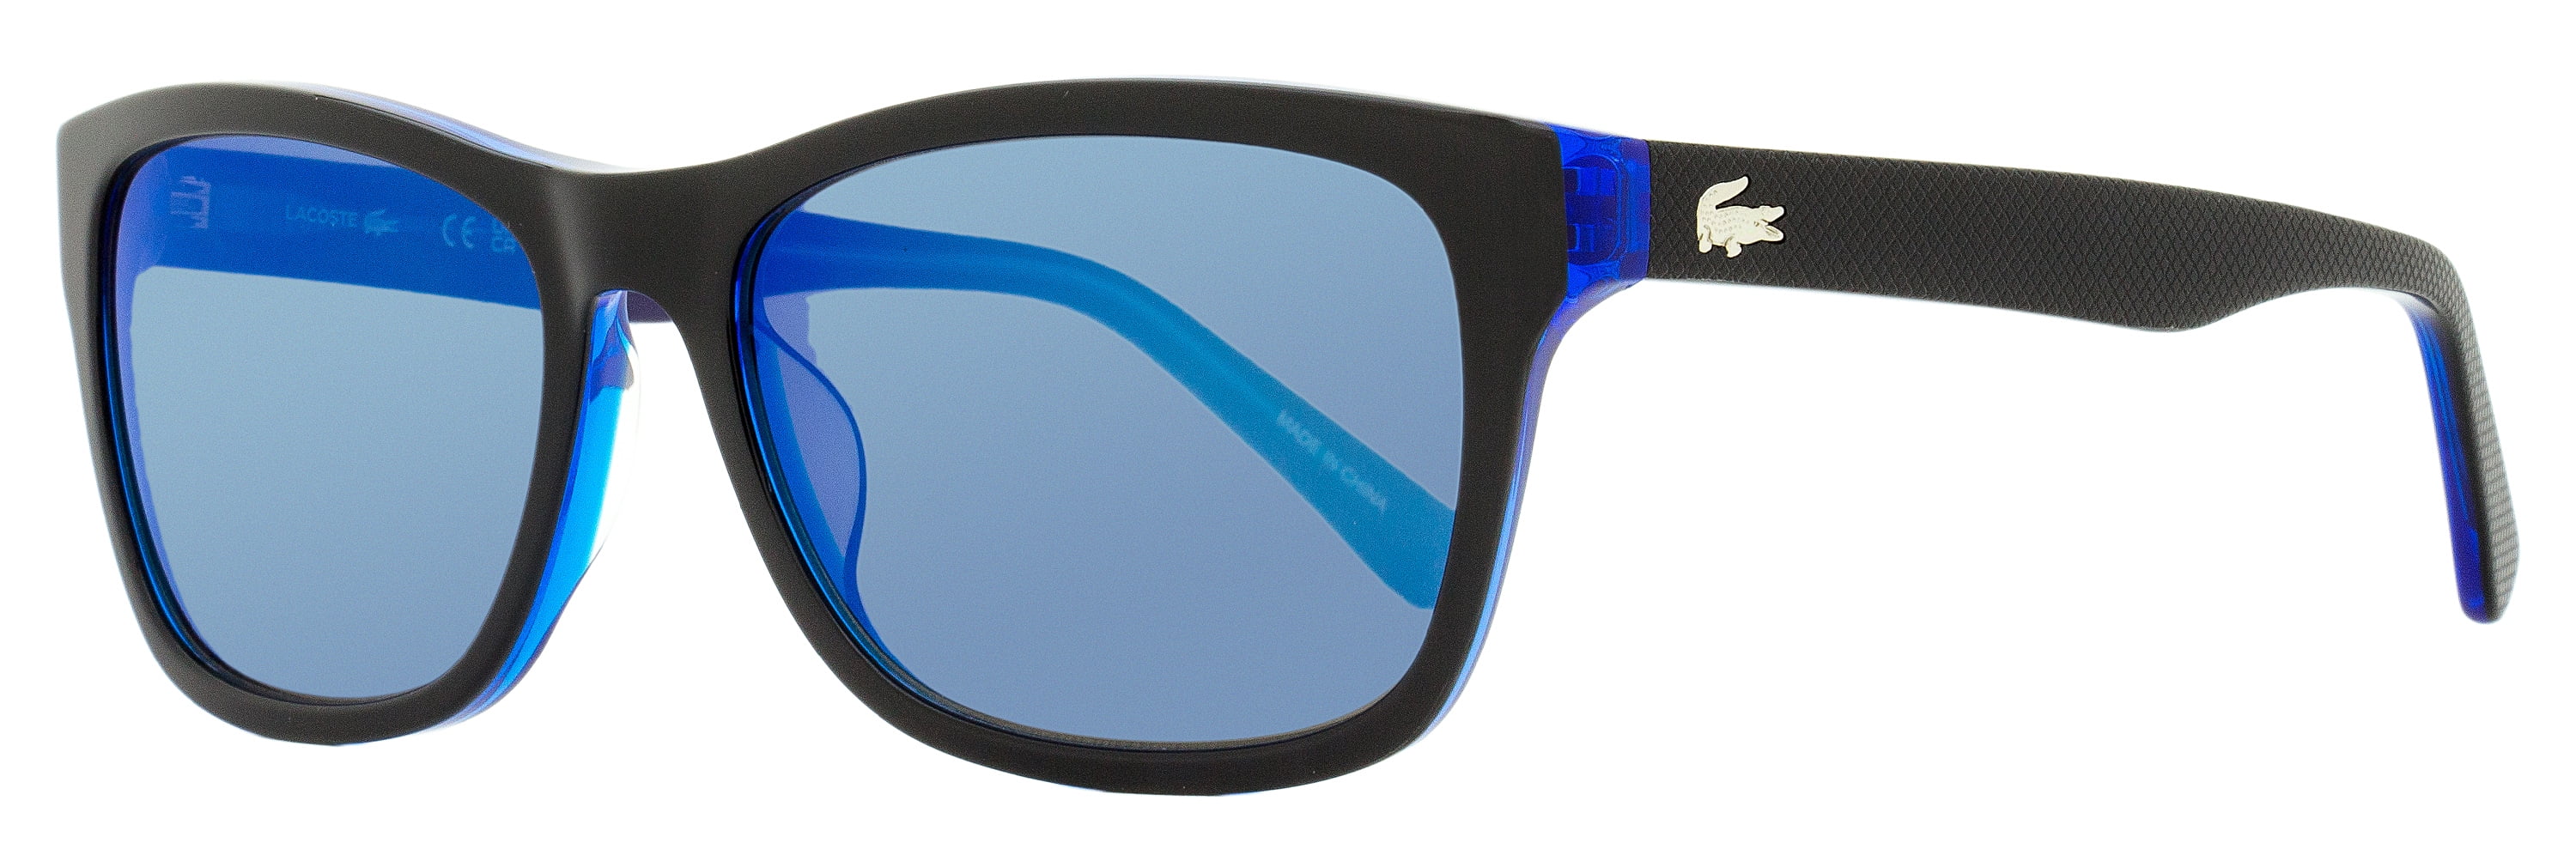 Sunglasses LACOSTE L3656S | Mr-Sunglass